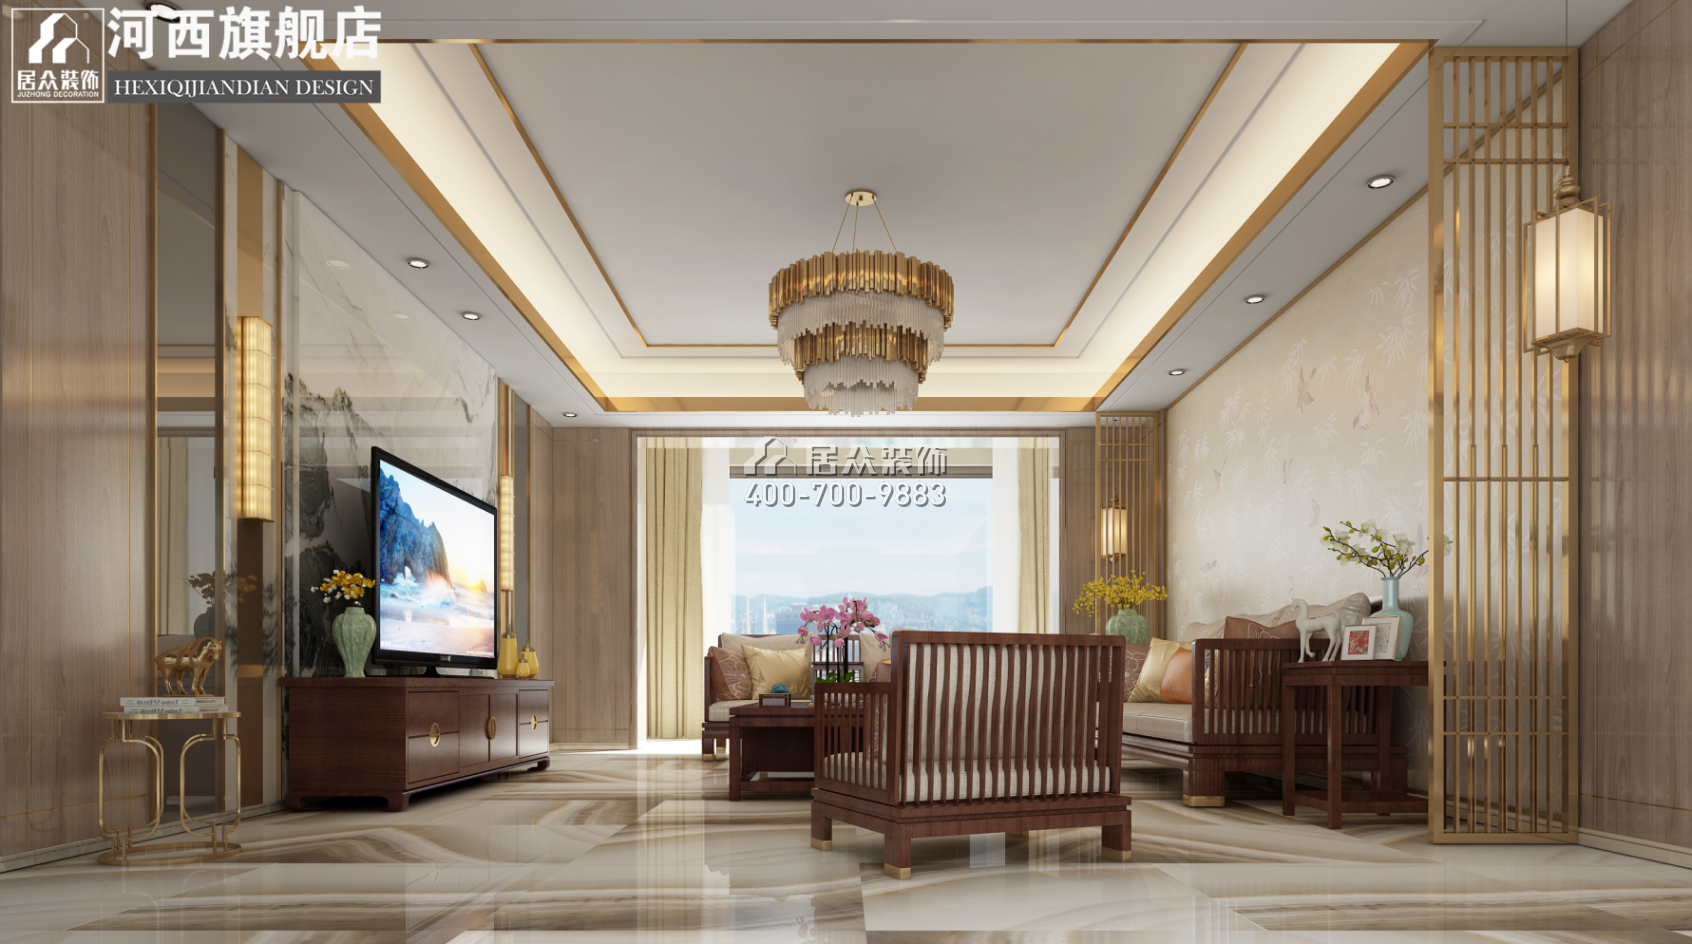 世茂外滩里215平方米中式风格平层户型客厅装修效果图